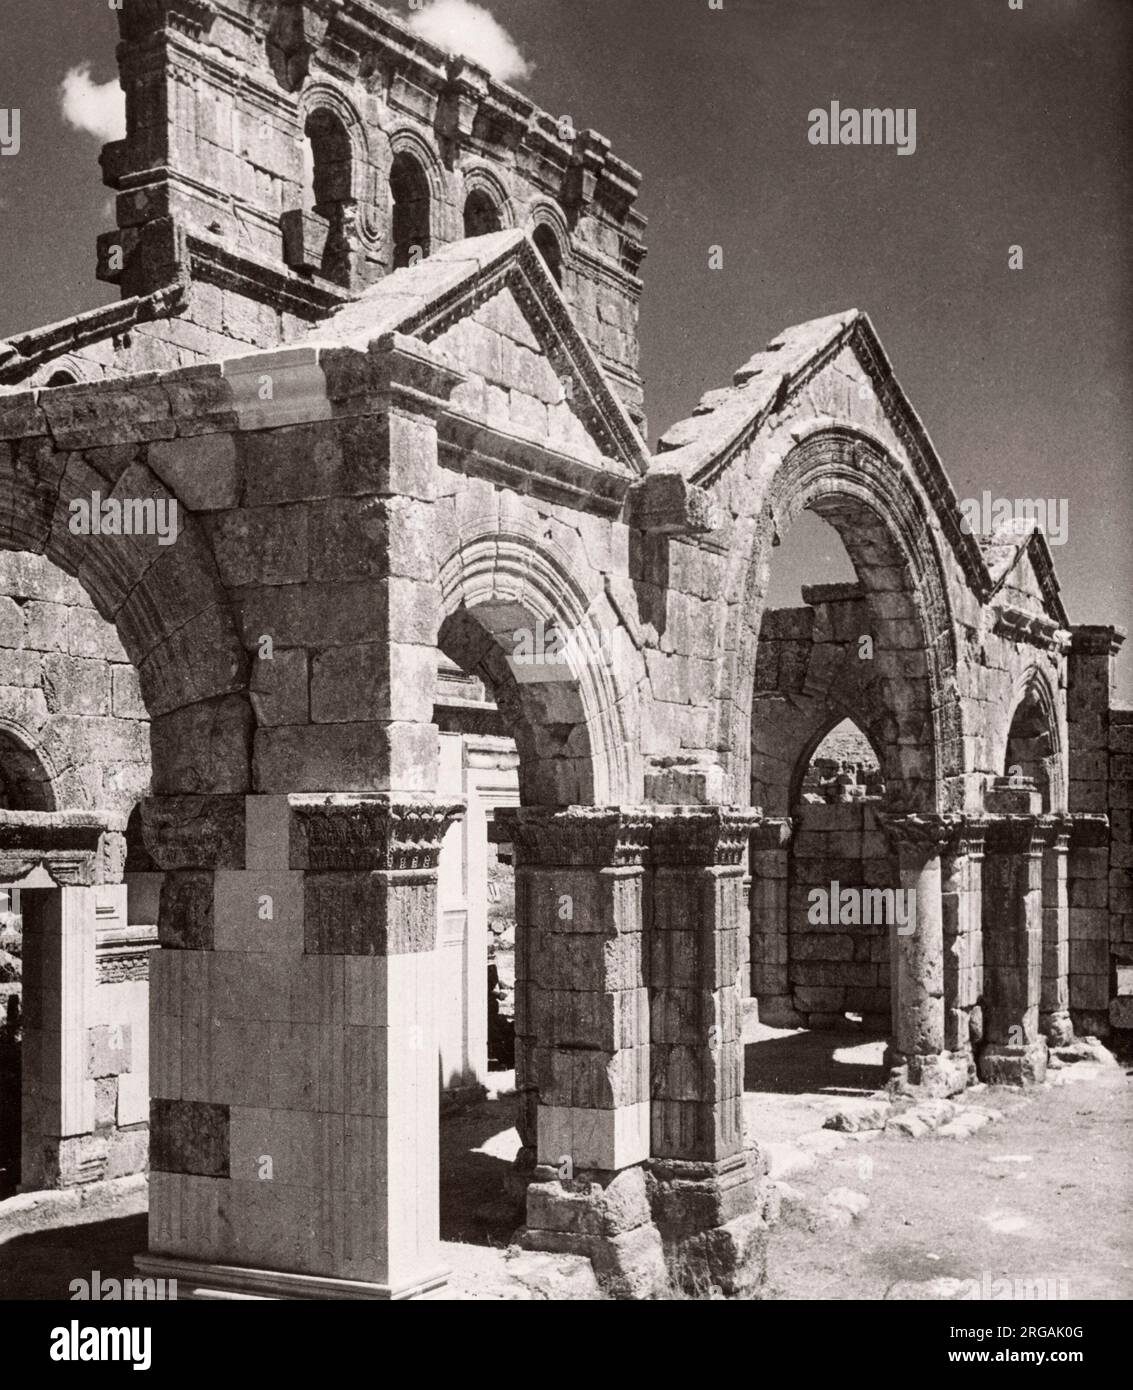 1843 - Syrie - l'église de St Simeon Stylites près d'Alep Photographie d'un officier de recrutement de l'armée britannique stationnée en Afrique de l'est et au Moyen-Orient pendant la Seconde Guerre mondiale Banque D'Images